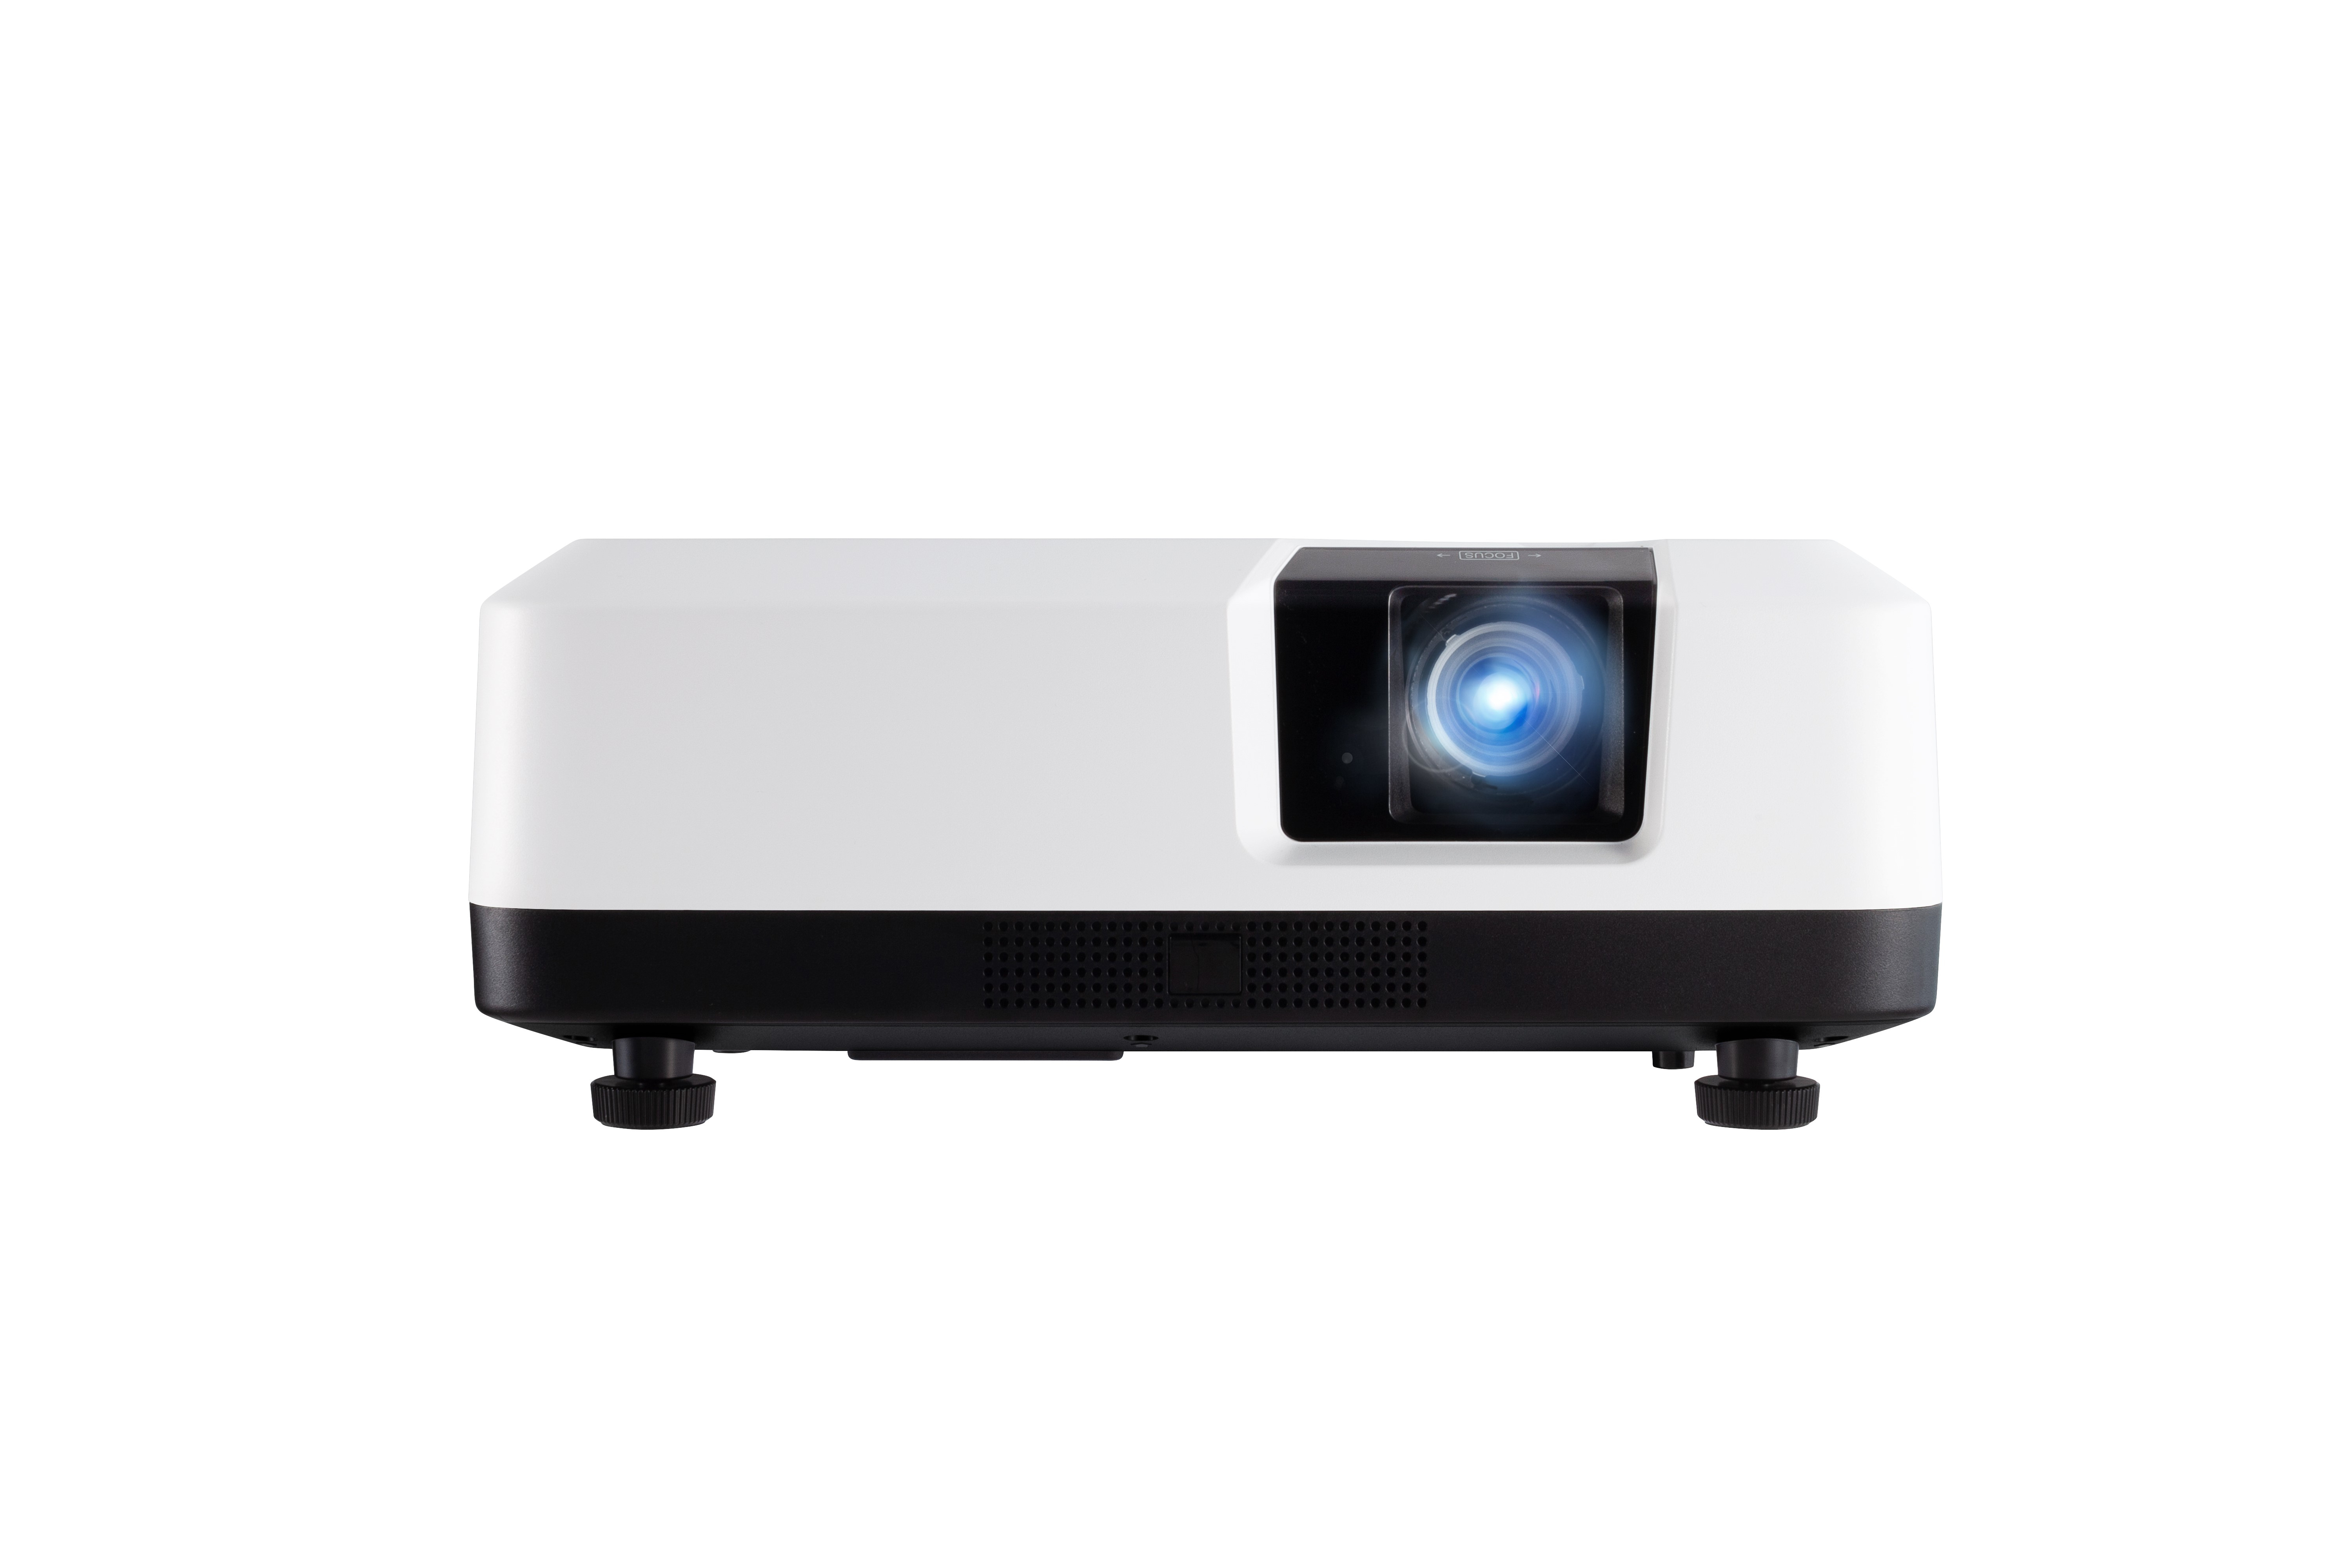 Viewsonic LS700HD videoproiettore 3500 ANSI lumen DMD 1080p (1920x1080) Compatibilità 3D Proiettore montato a soffitto/parete Nero, Bianco [LS700HD]